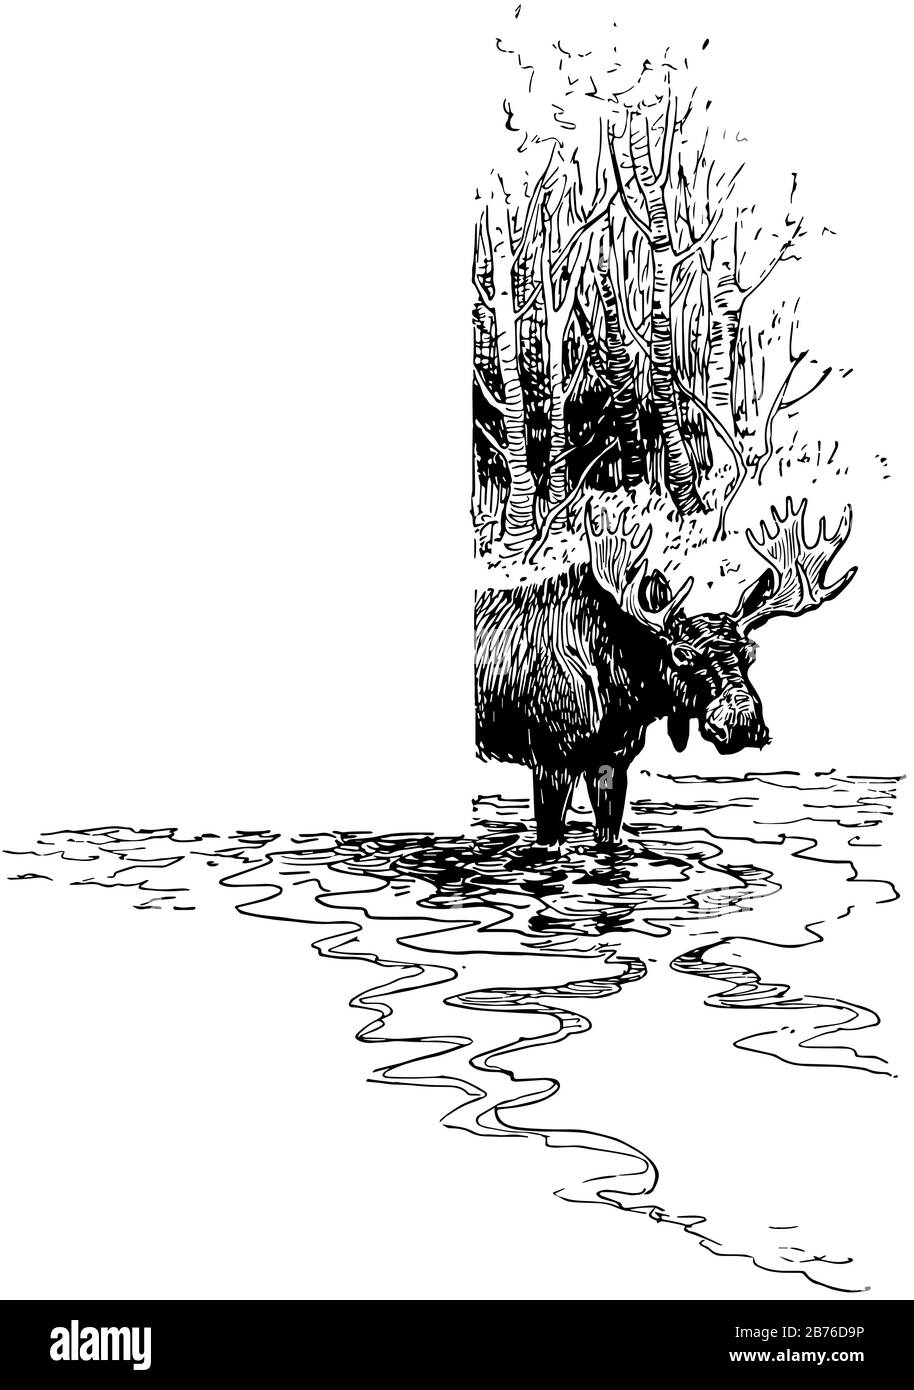 Moose in acqua in questo disegno di cornice, disegno di linea vintage o illustrazione di incisione. Illustrazione Vettoriale